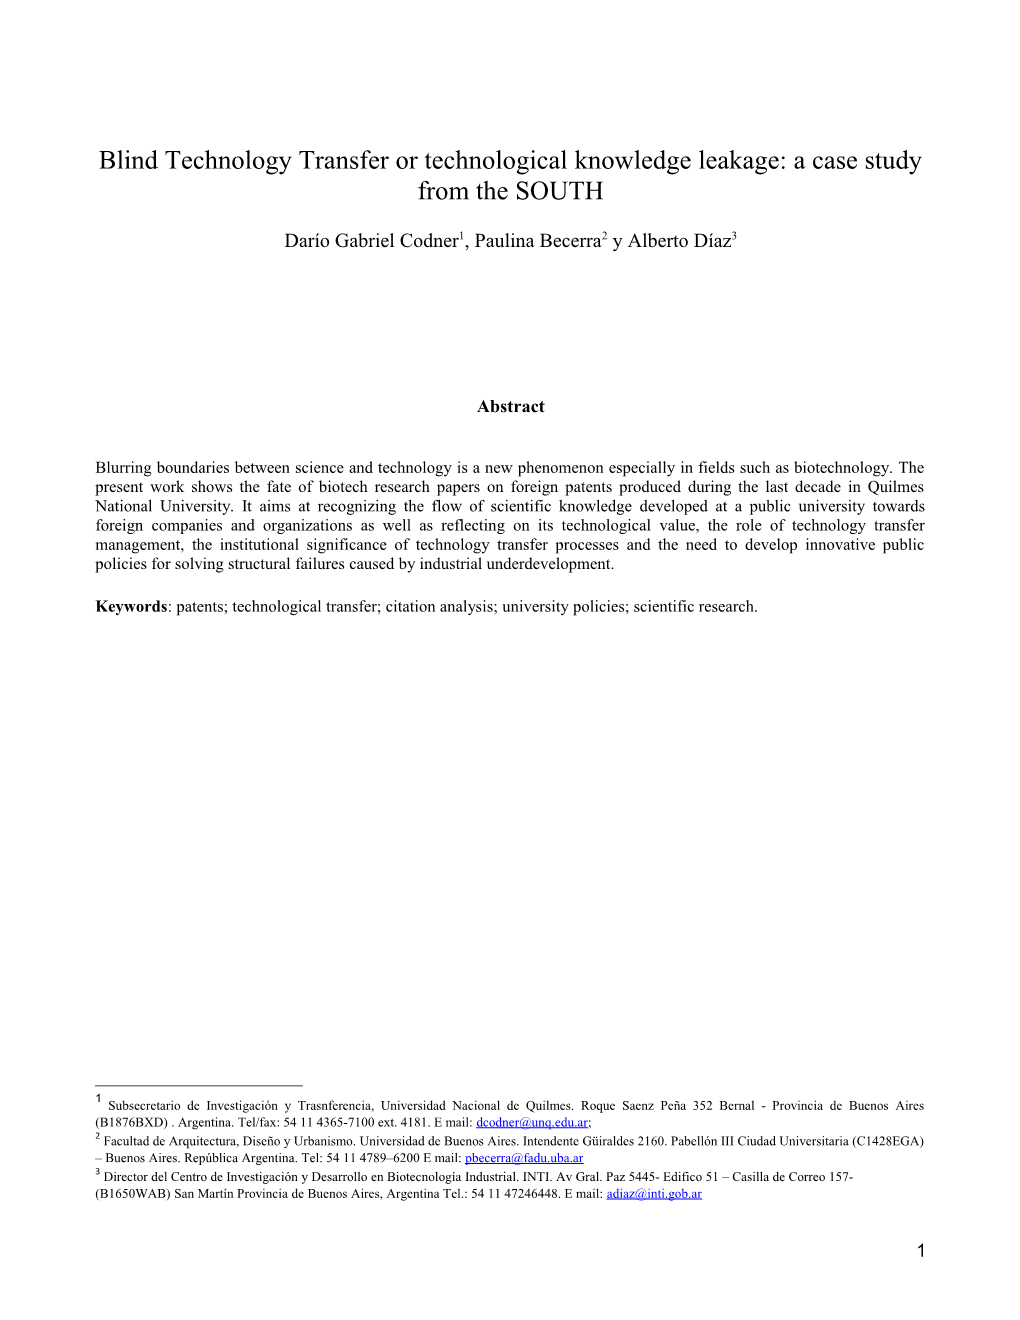 Transferencia Tecnológica Ciega O Fuga De Conocimiento Tecnológico: Un Estudio De Caso